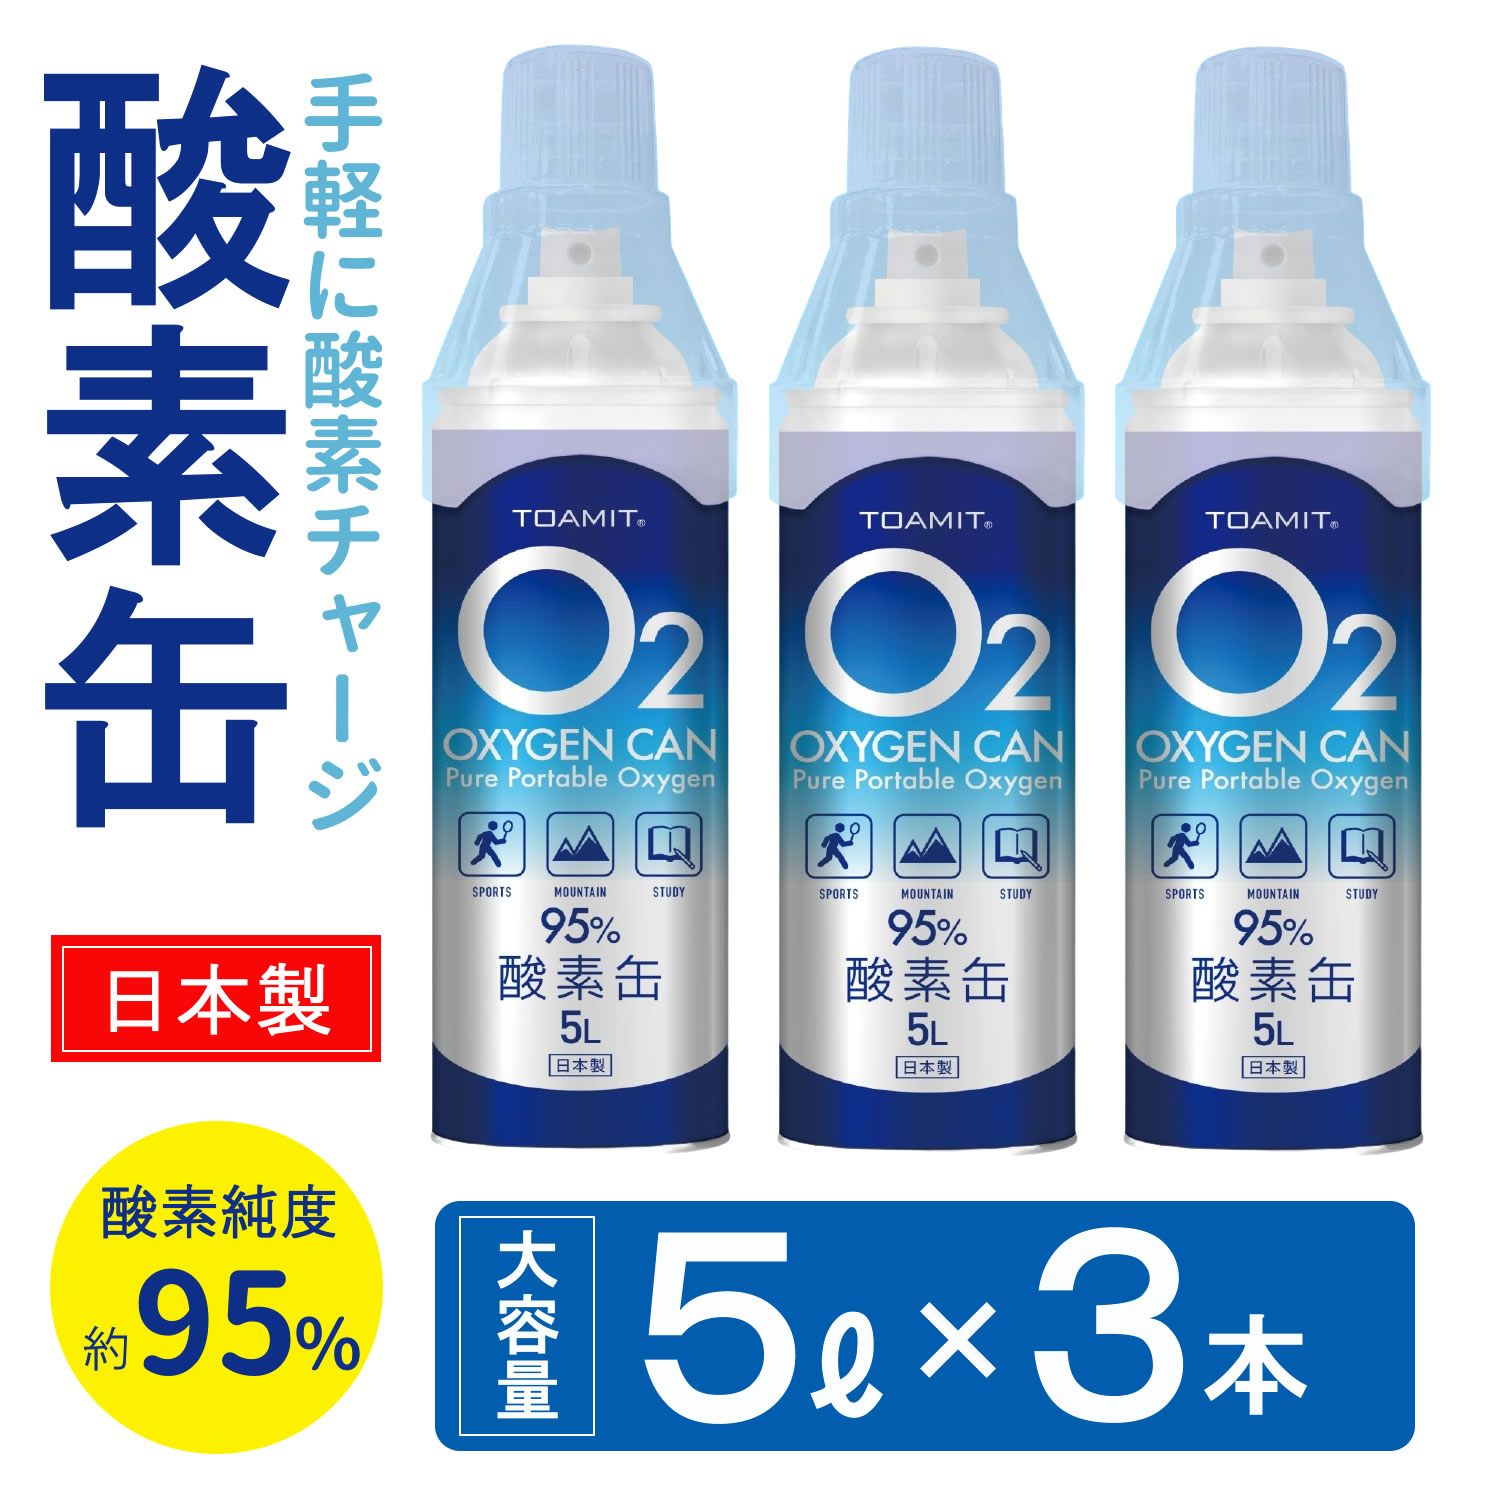 日本製 携帯 酸素缶 5L 3本 東亜産業 濃縮酸素 酸素かん 携帯酸素スプレー 酸素ボンベ 携帯酸素 携帯酸素缶 登山 高濃度酸素 おしゃれ